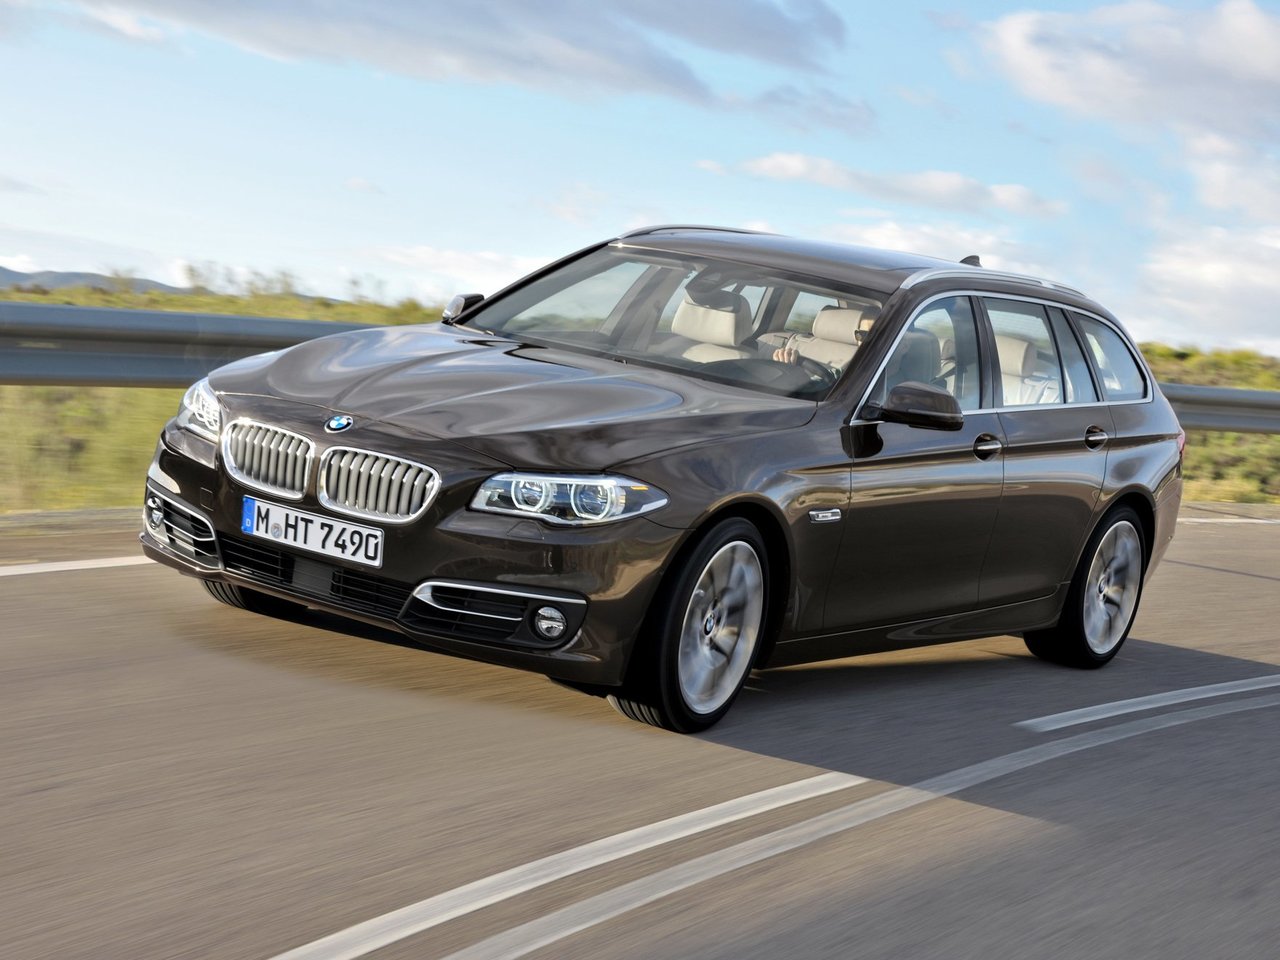 Расход газа пяти комплектаций универсала пять дверей BMW 5 серия. Разница стоимости заправки газом и бензином. Автономный пробег до и после установки ГБО.